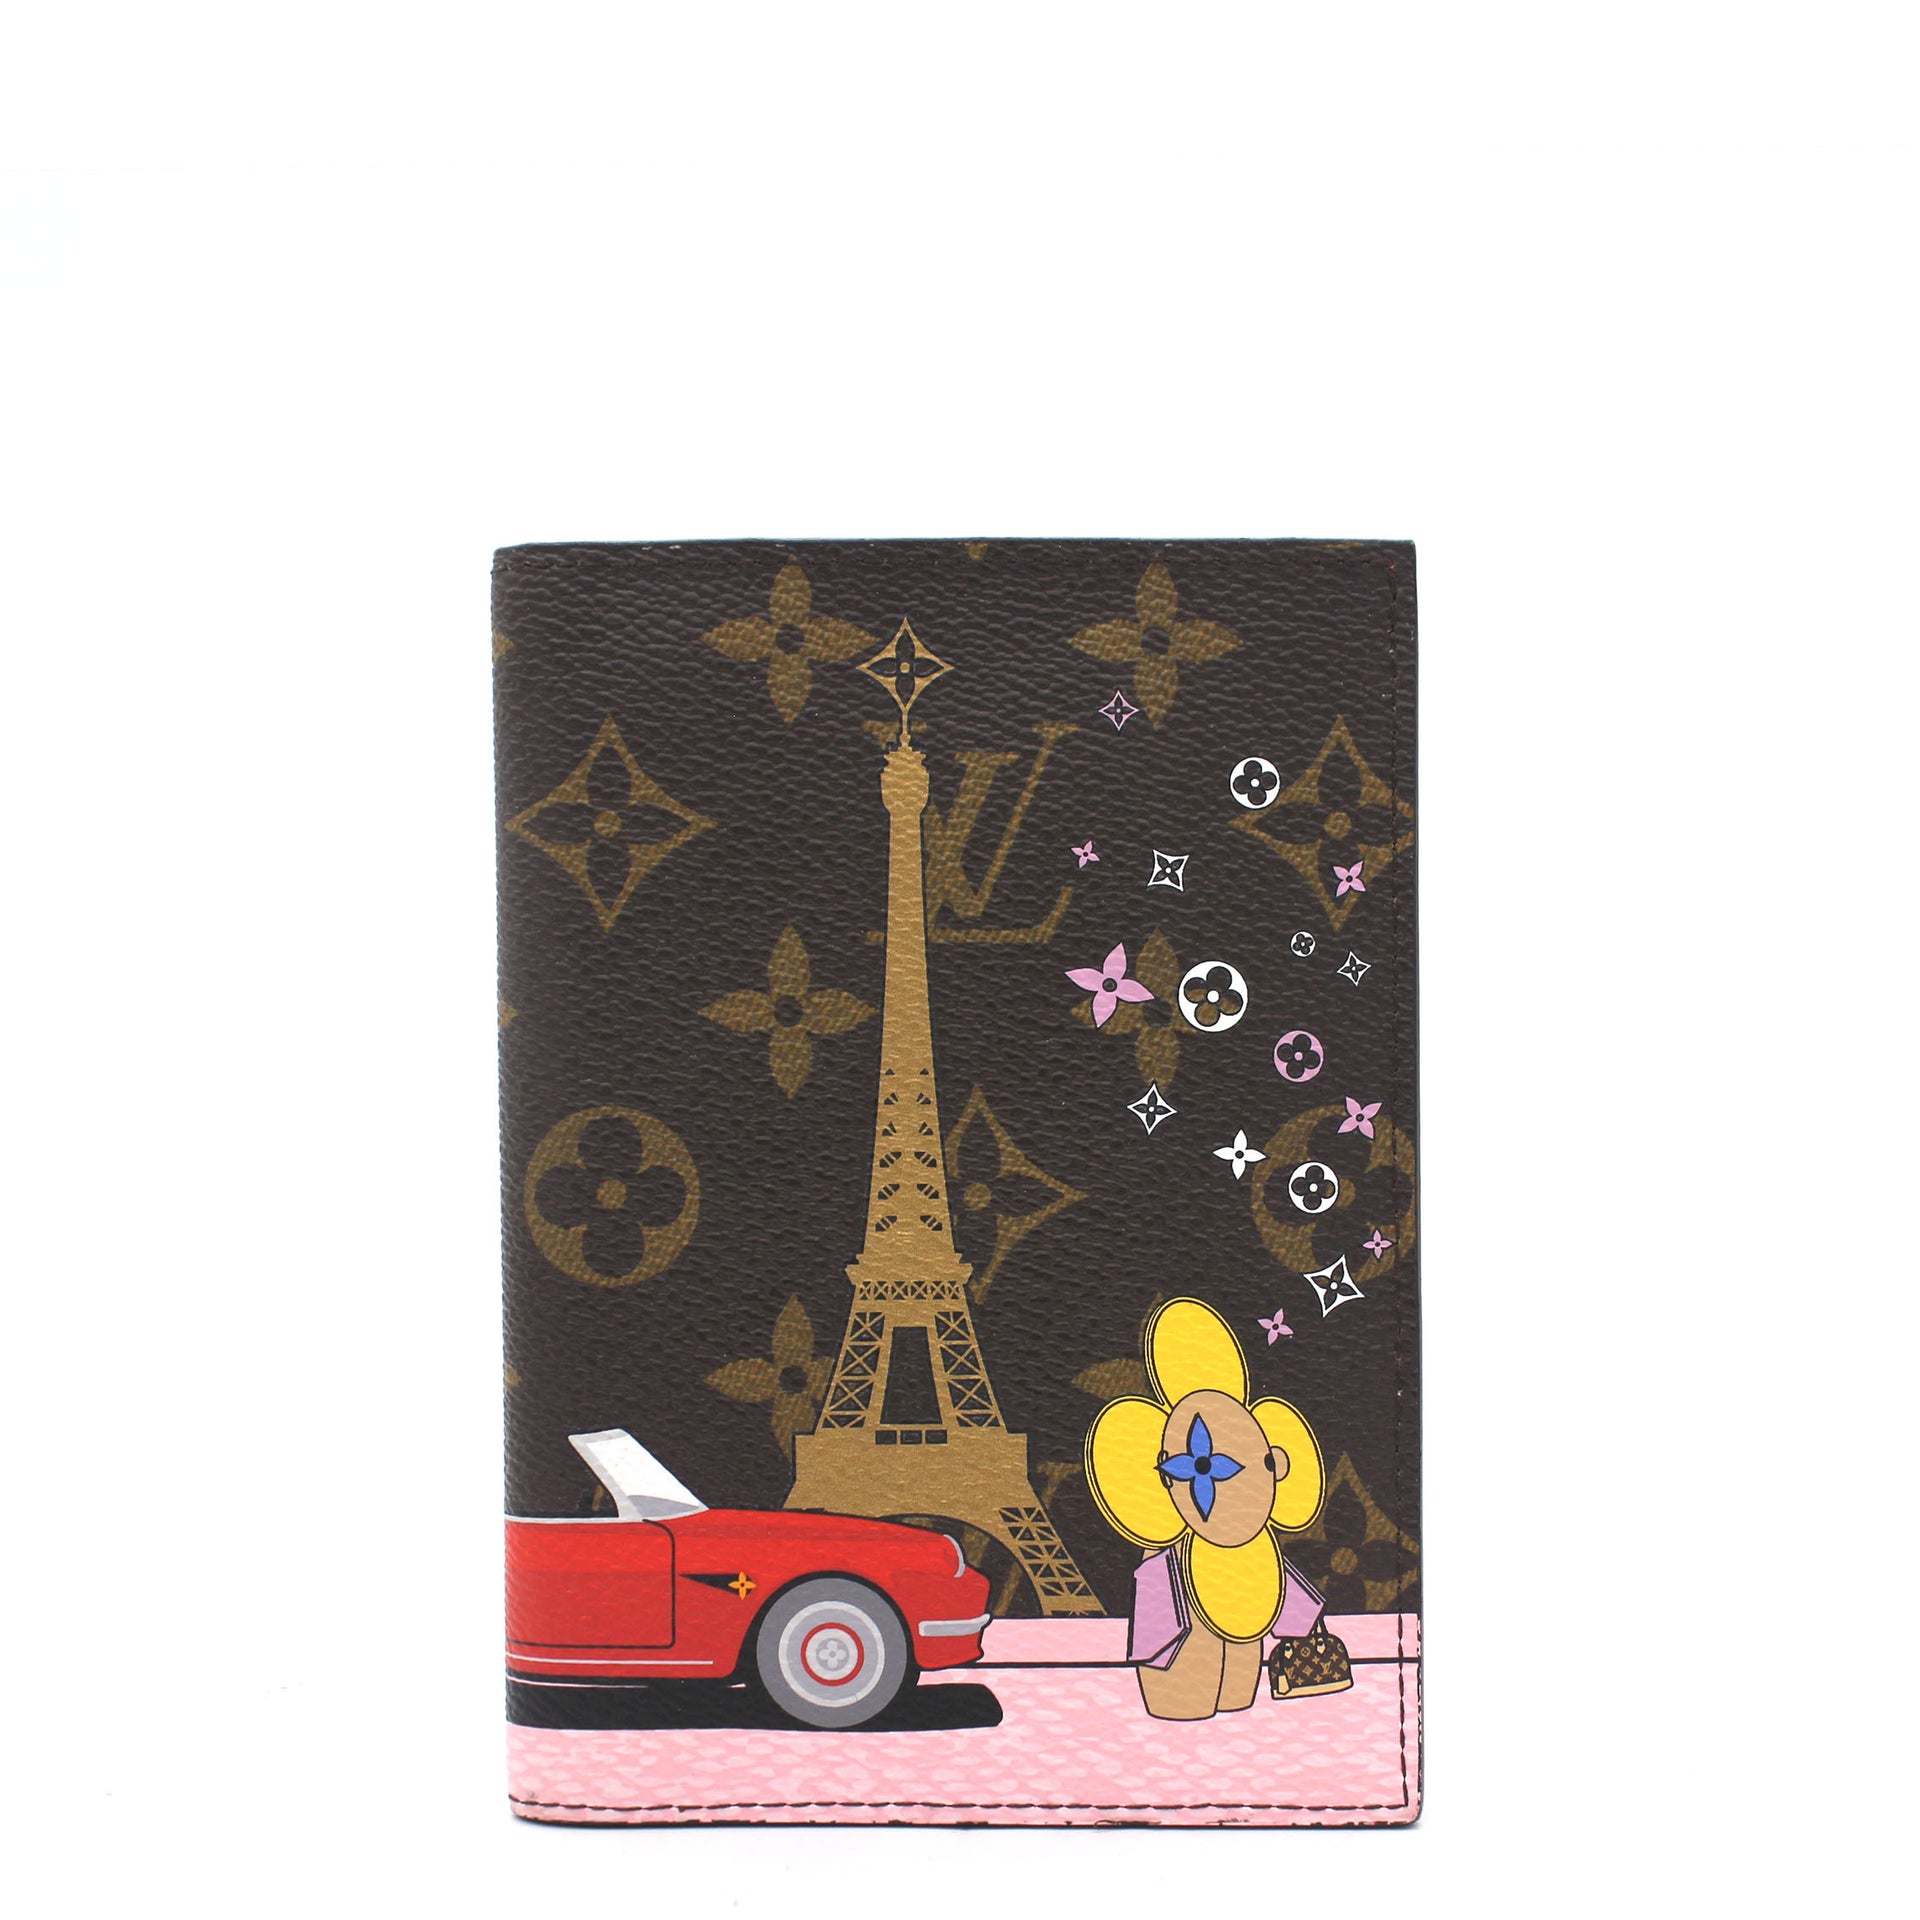 Louis Vuitton Multicolor Vivienne Christmas 2019 Xmas Paris Passport Cover  – STYLISHTOP